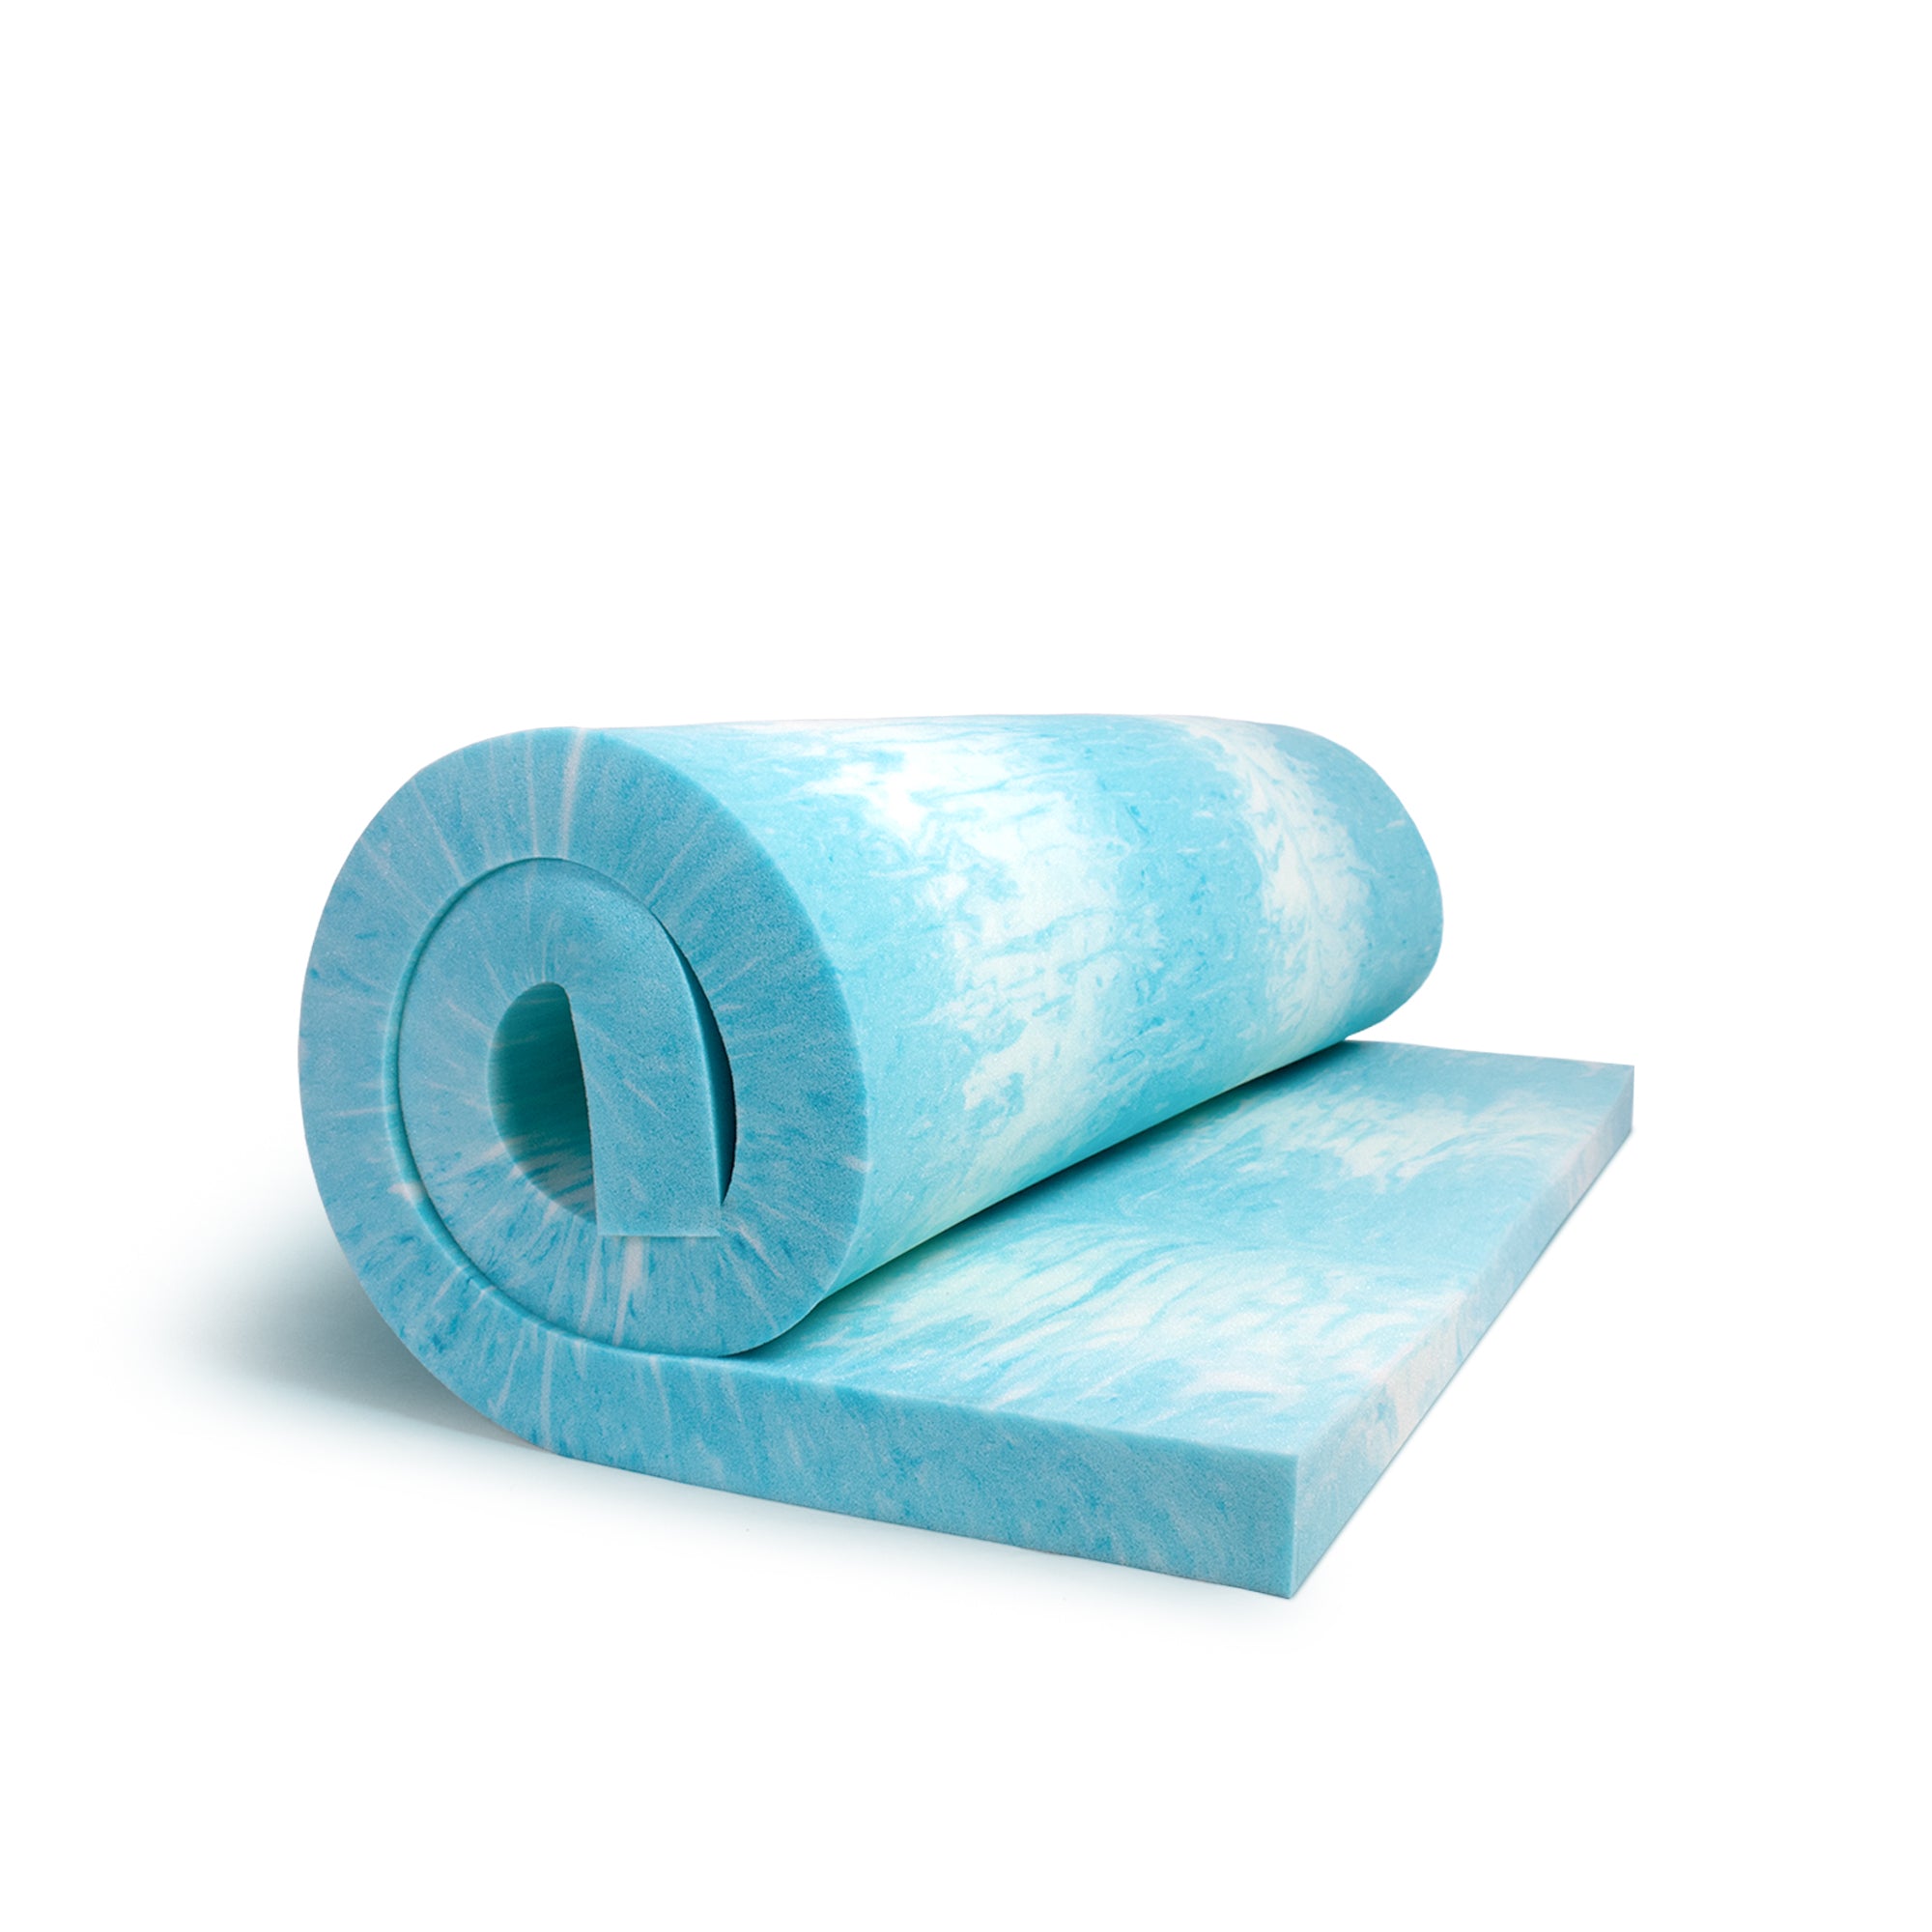 Memory Foam Mattress Toppers for added comfort – We Cut Foam